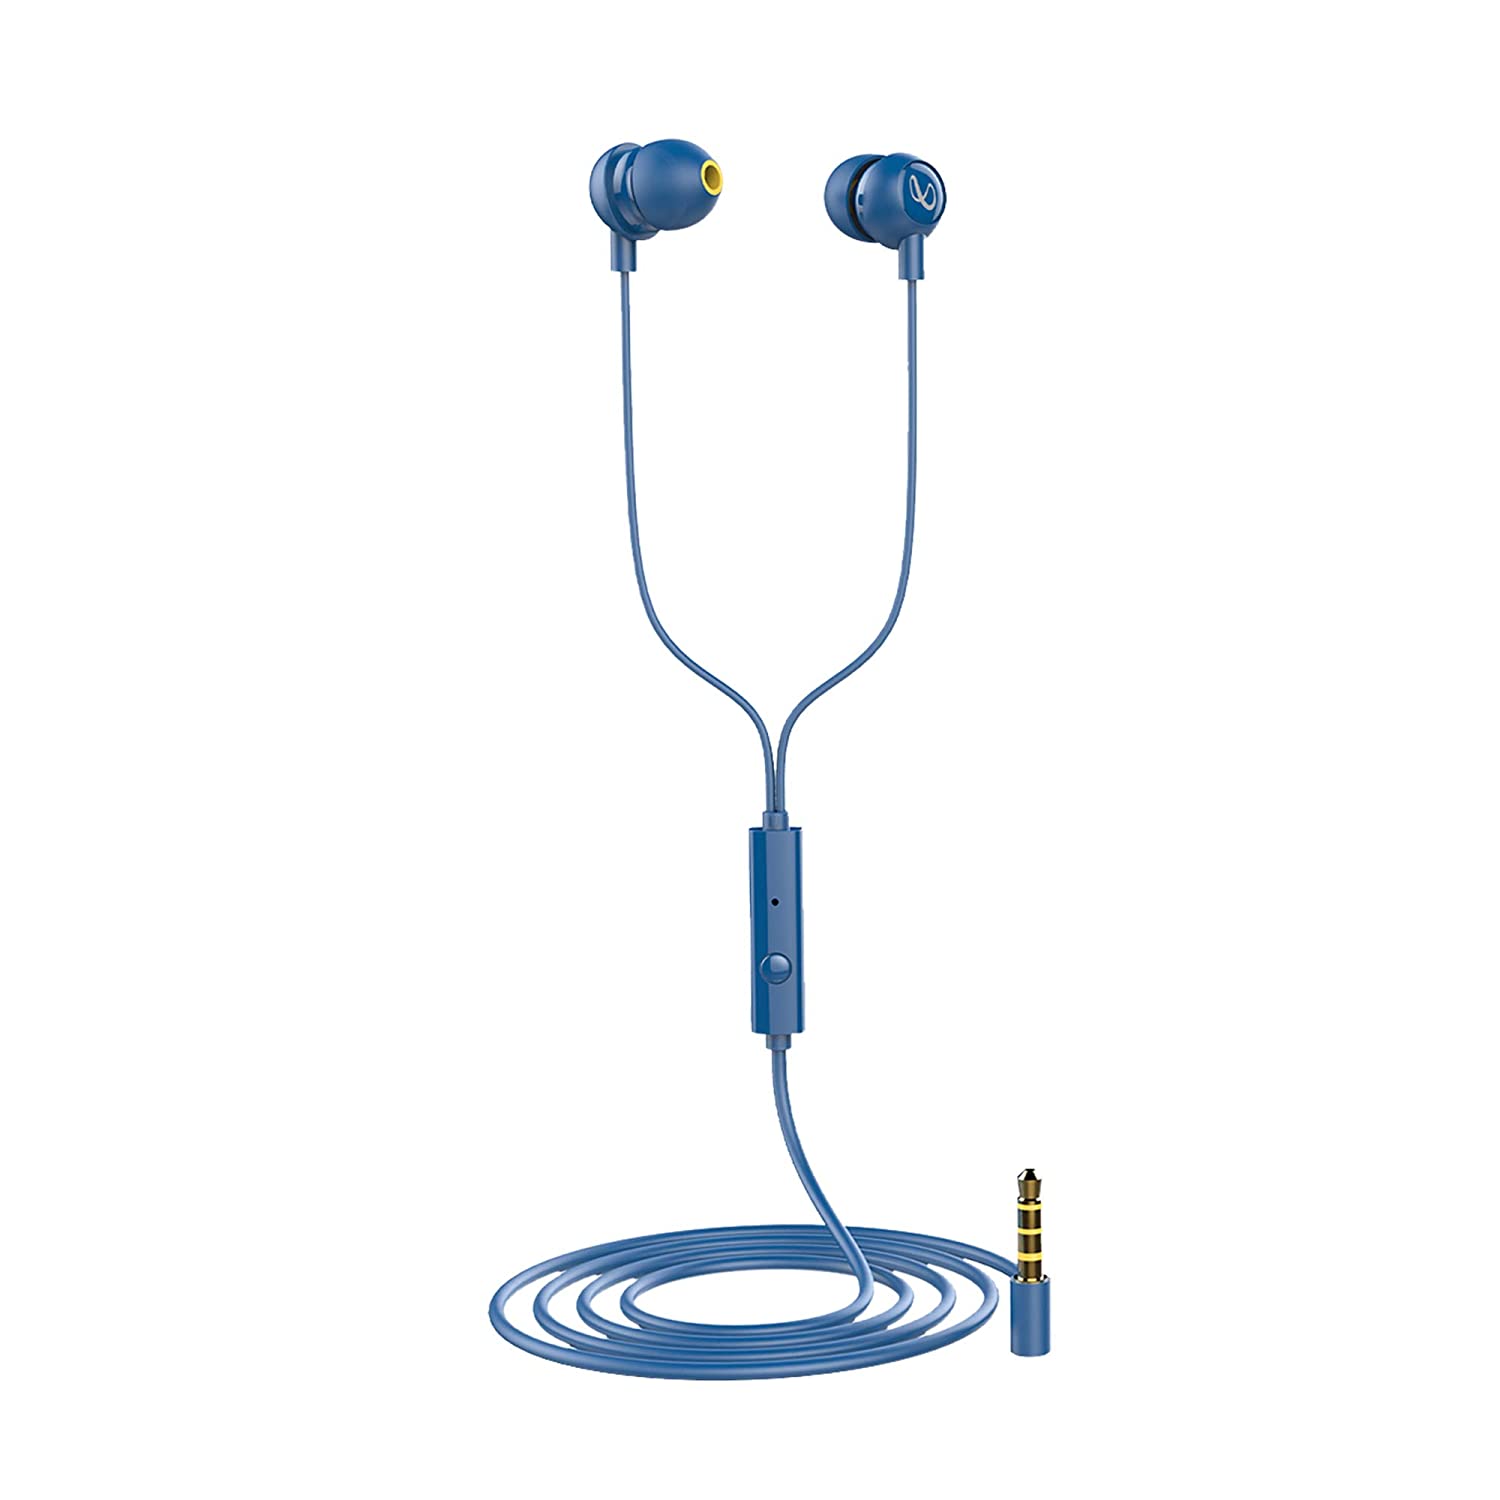 Infinity Zip 20 in-Ear Deep Bass Headphones with Mic